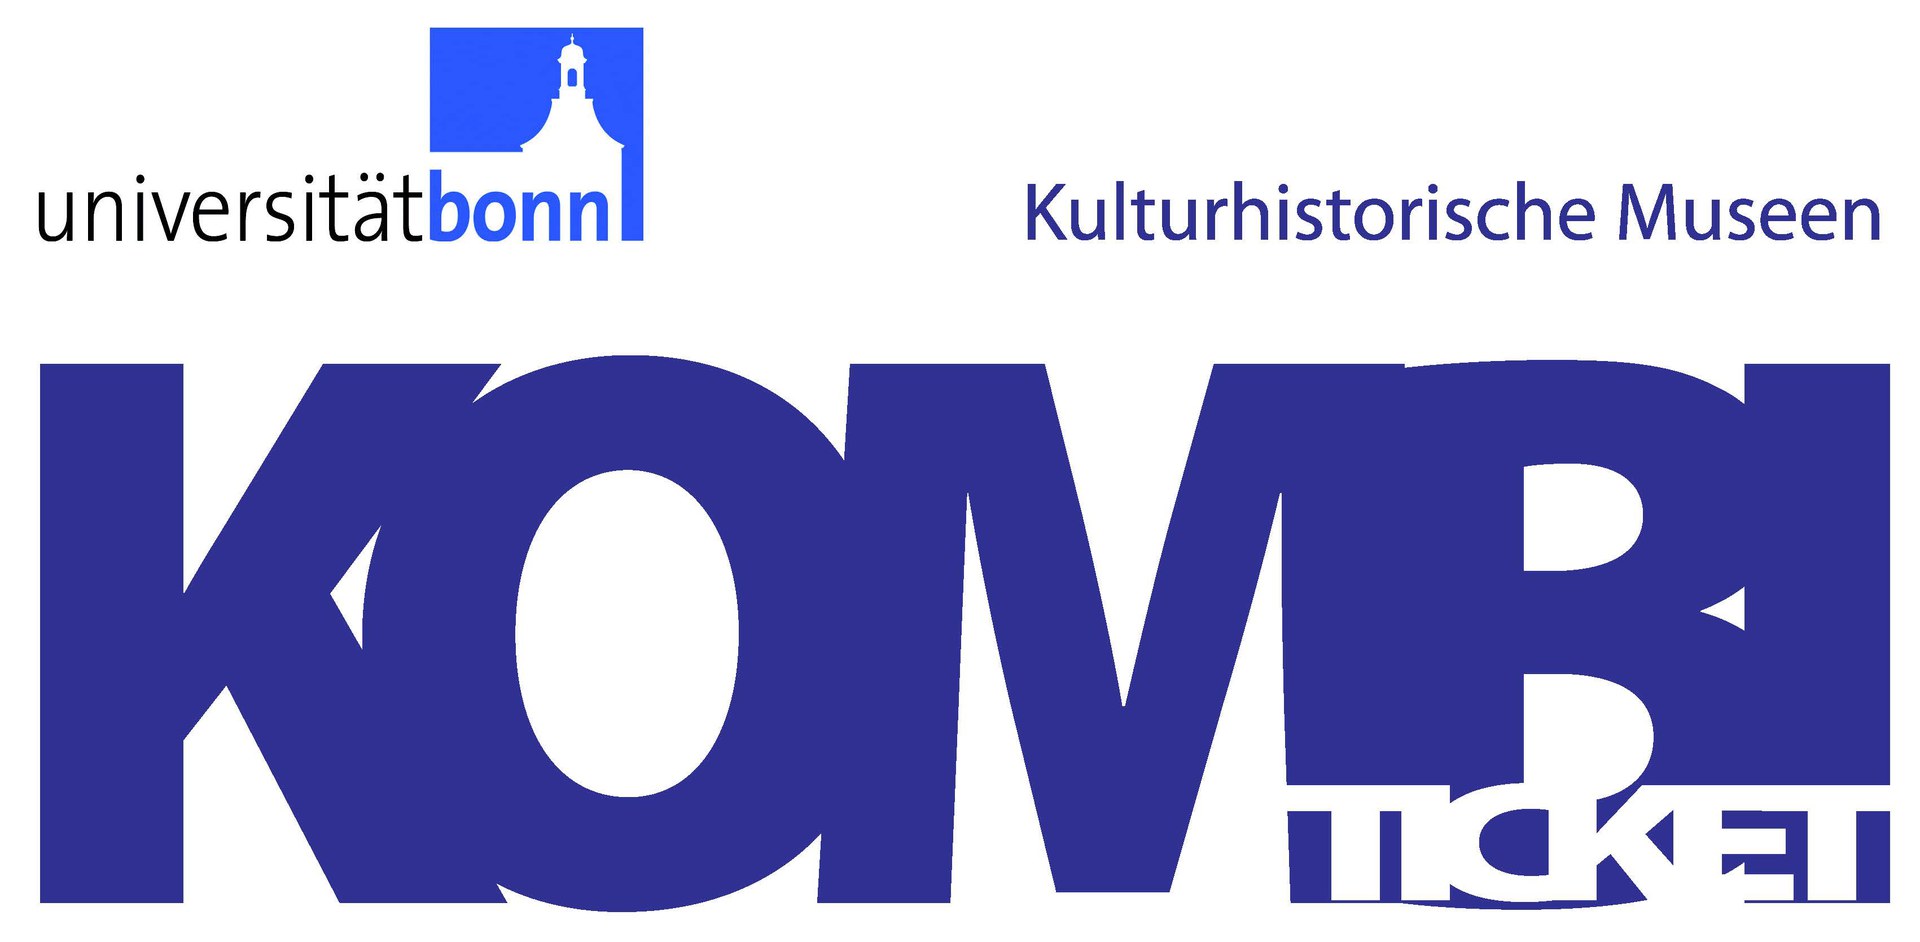 Kombi-Ticket für Kulturhistorische Museen